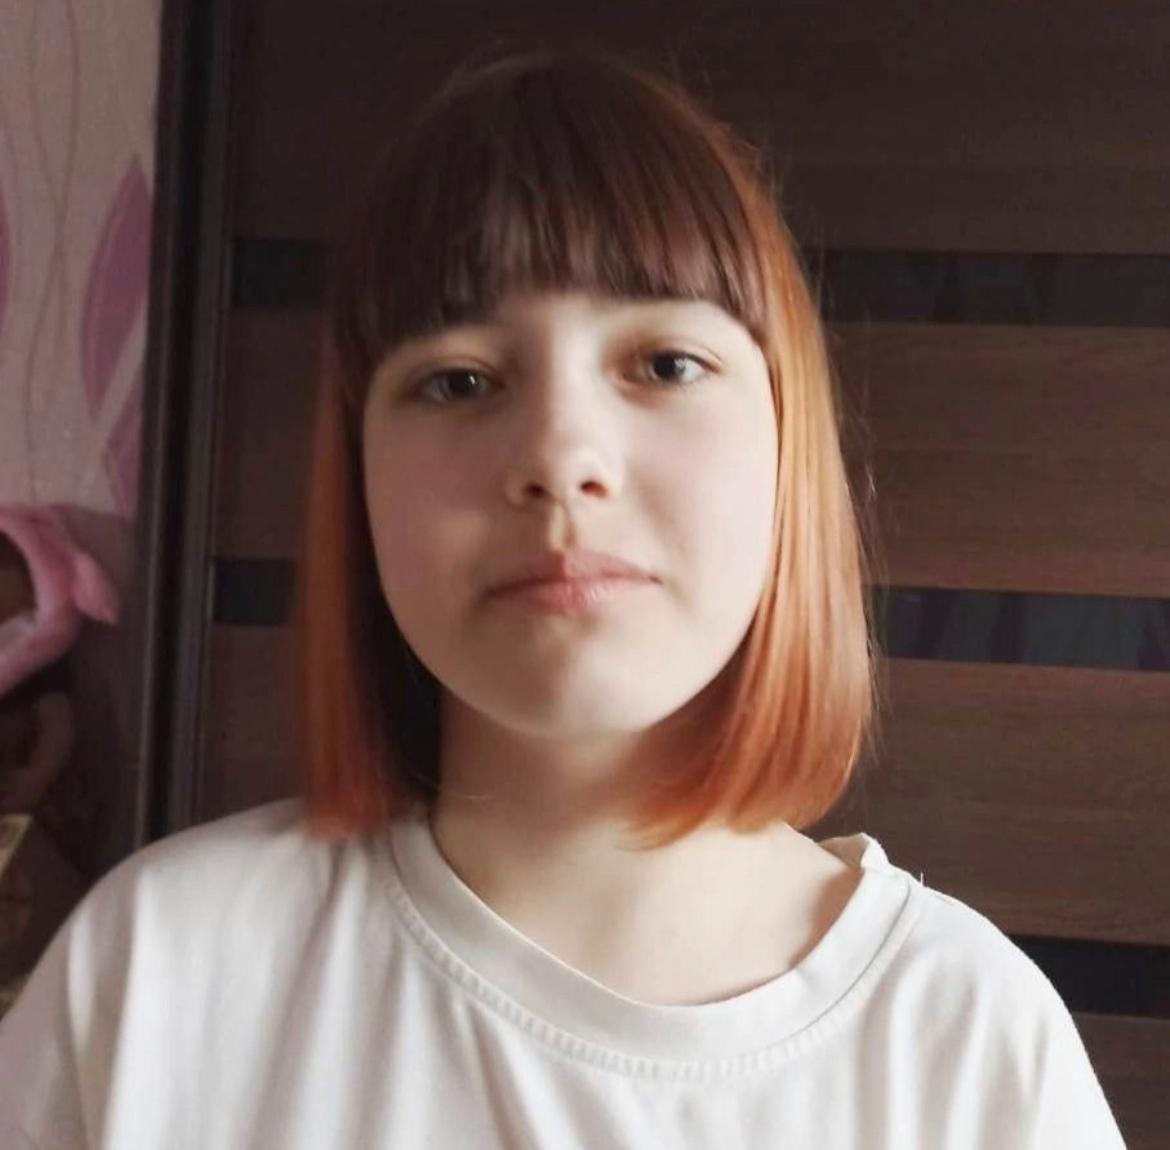 Девочка-подросток пропала в Кузбассе. Идёт доследственная проверка